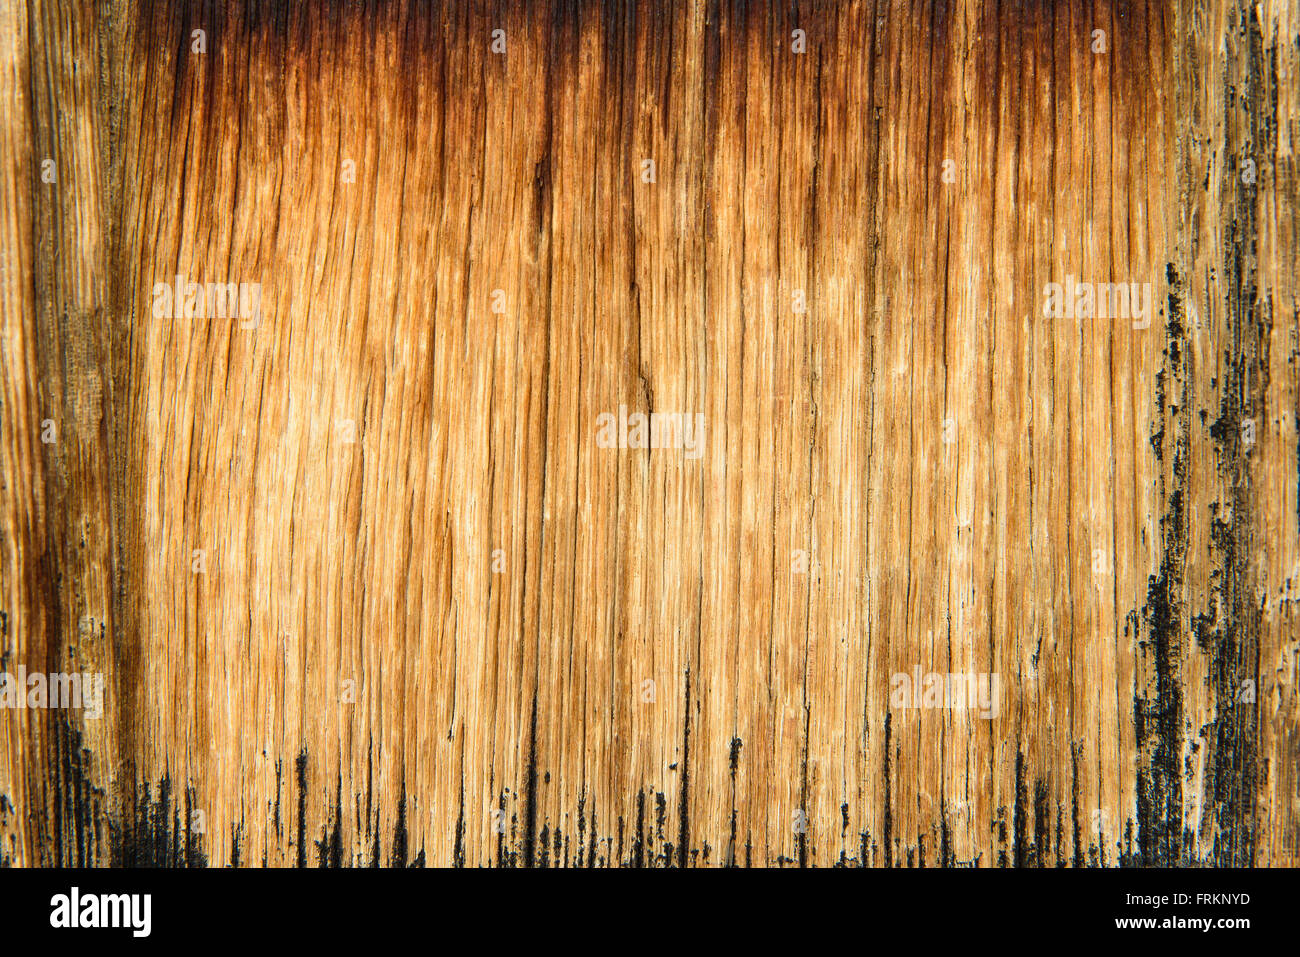 Fondo de madera vieja con rayas verticales Foto de stock